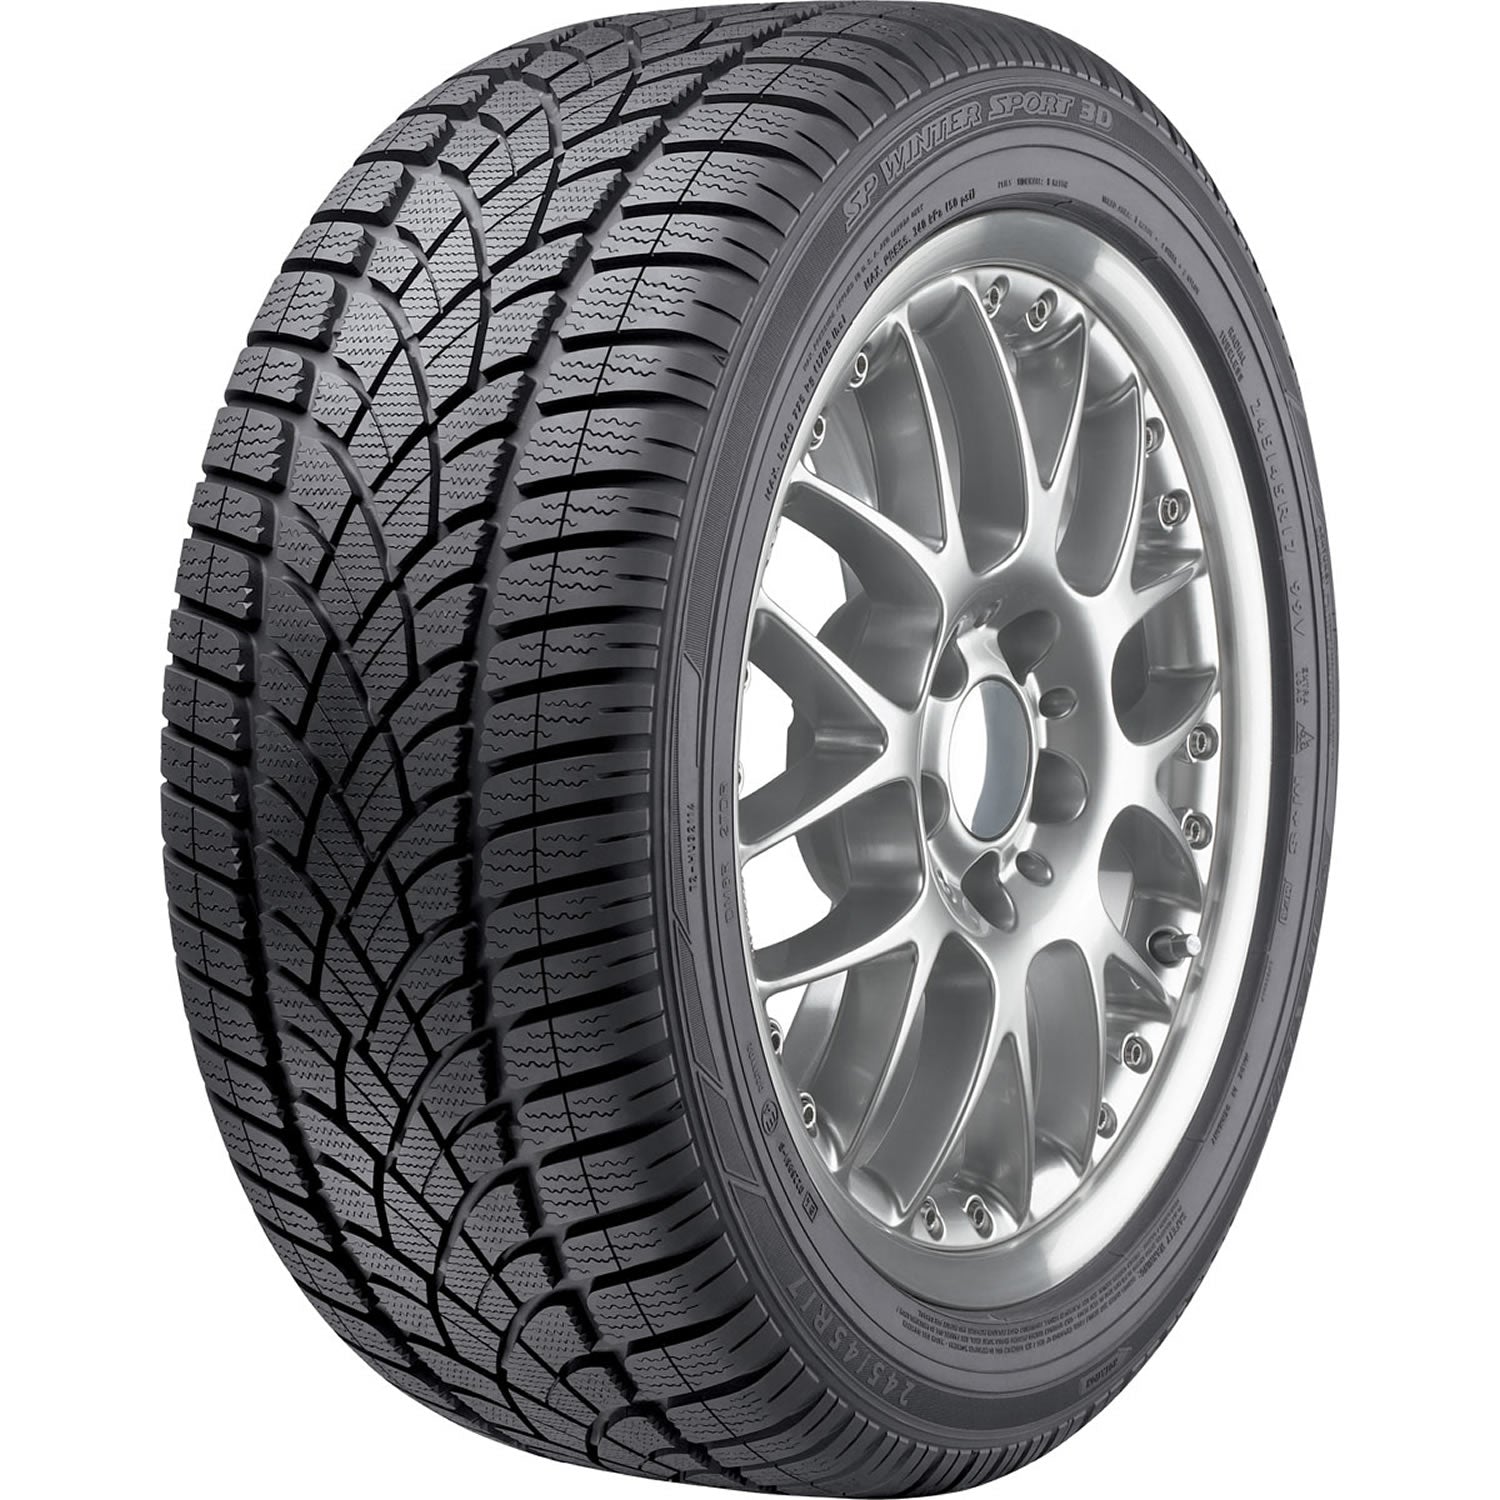 DUNLOP SP WINTER SPORT 3D 255/55R18 (29X10.4R 18) Tires